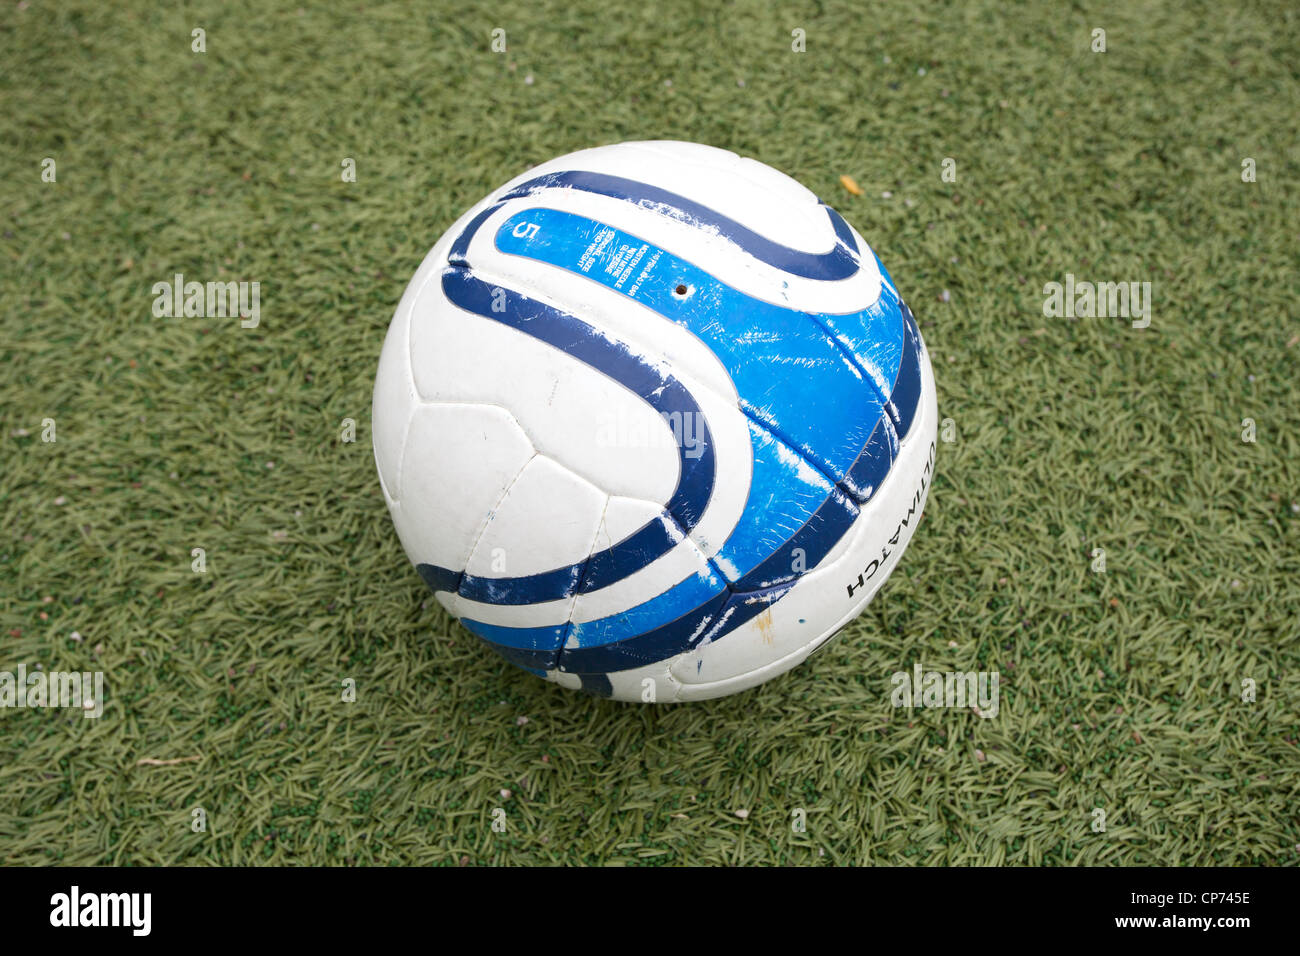 Un ballon de football. Banque D'Images